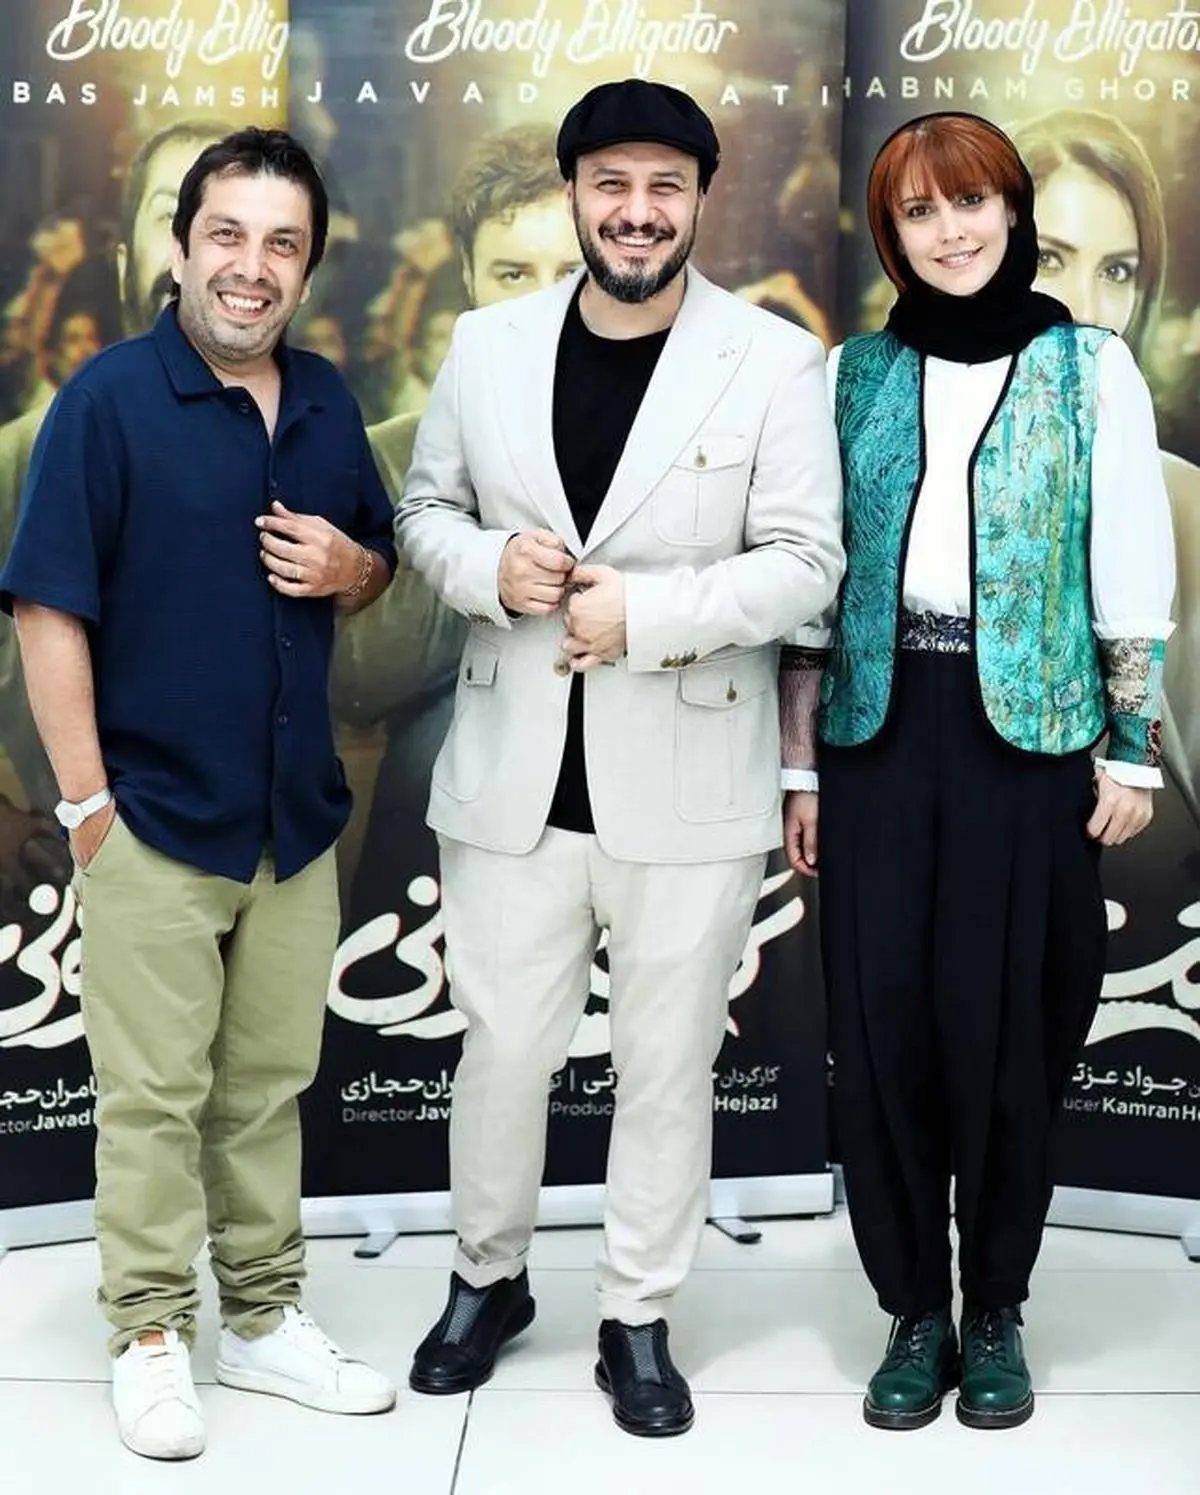 تیپ جذاب در کنار جواد عزتی و جمشیدی فر/ عکس